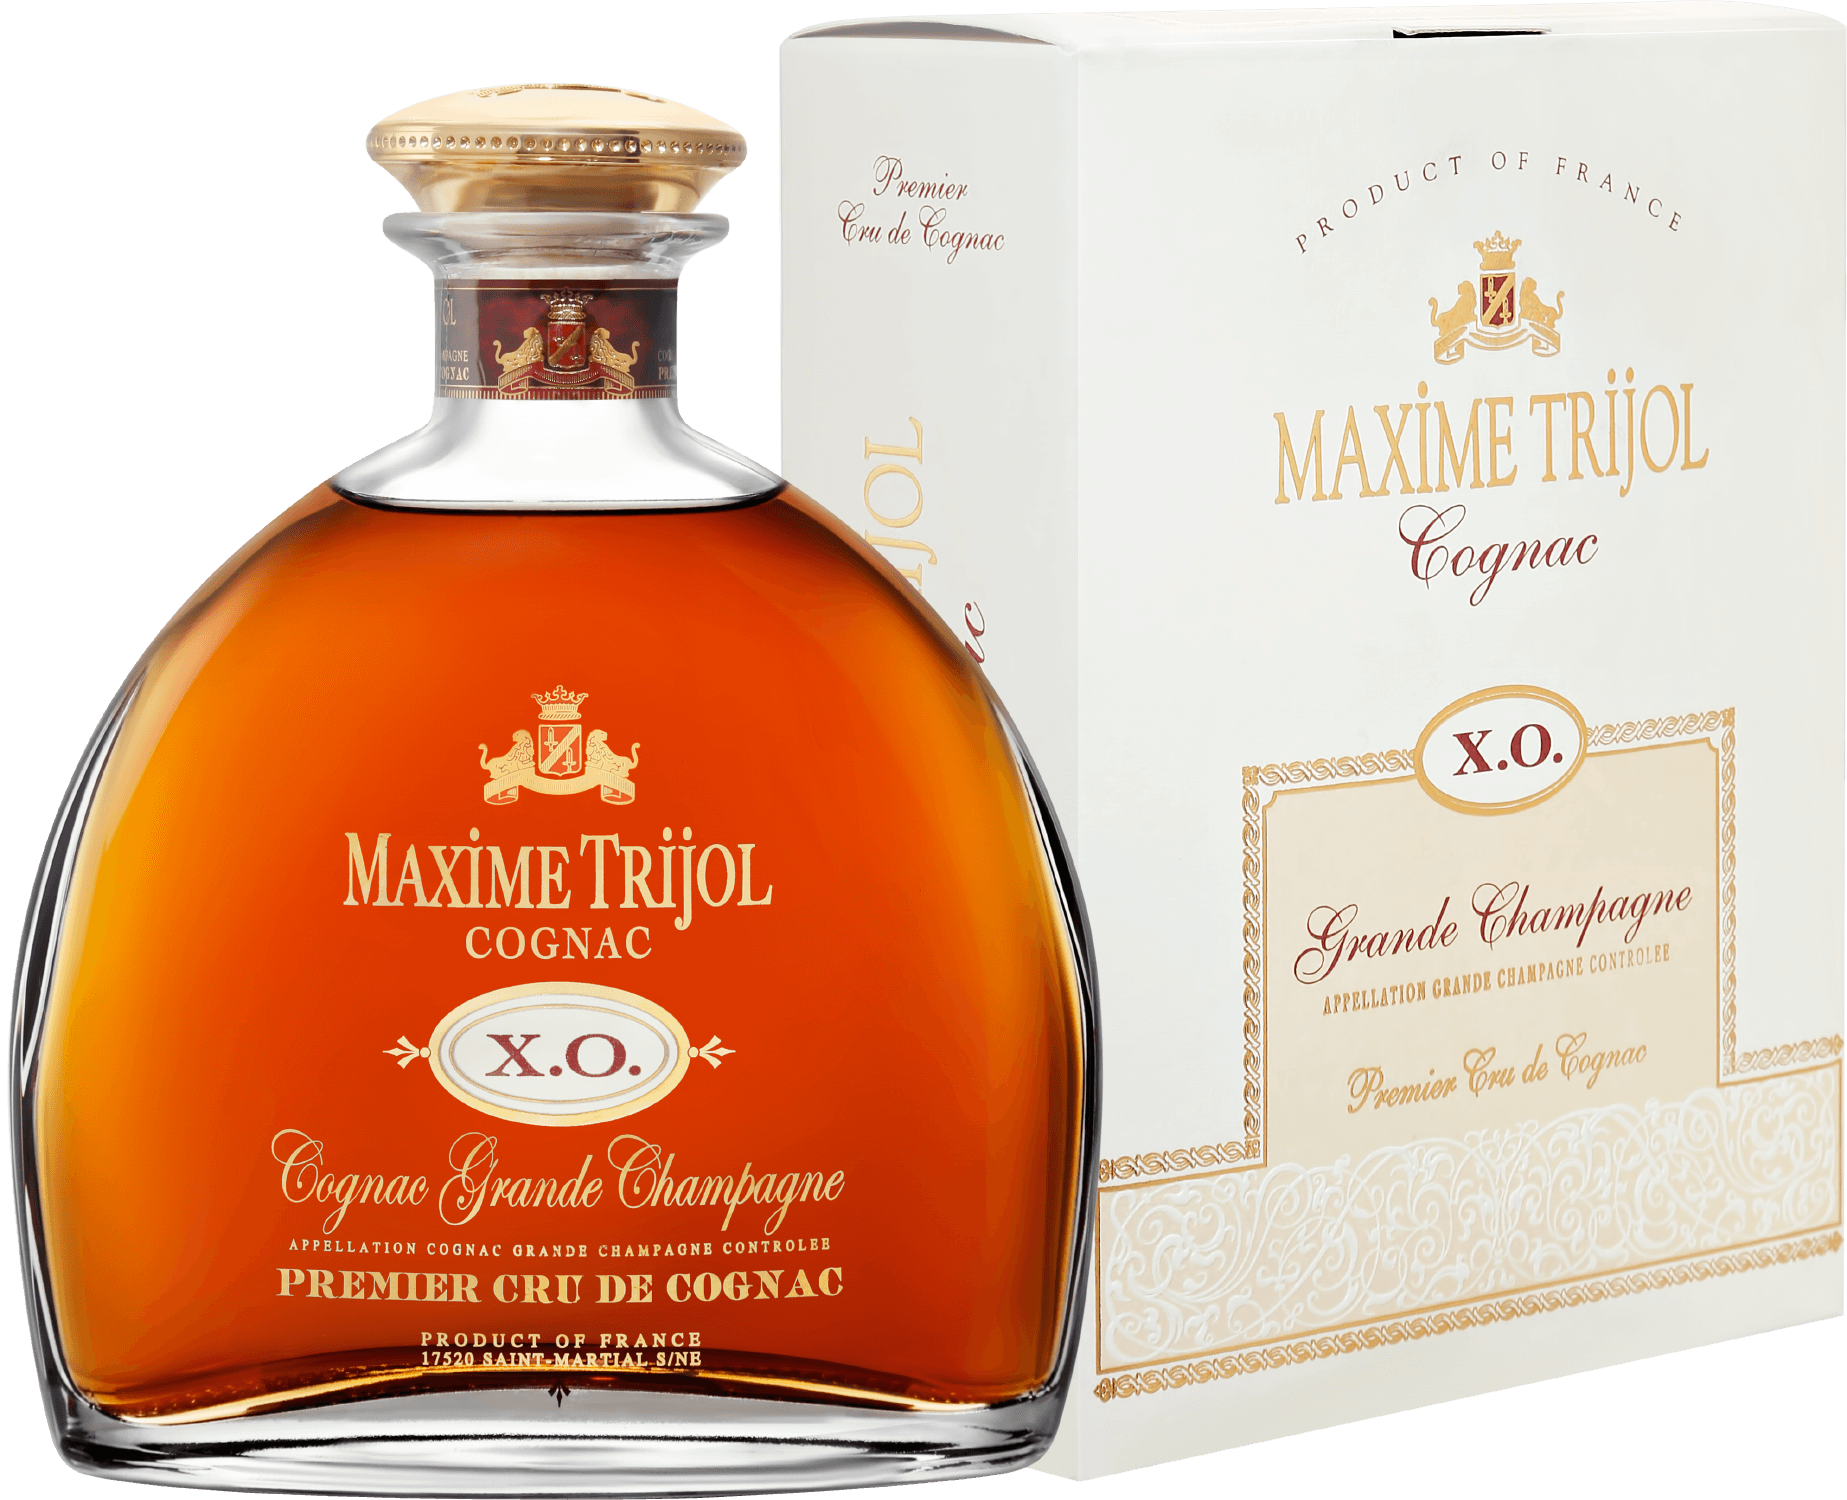 Maxime Trijol Cognac XO Grande Champagne Premier Cru (gift box) lautrec cognac xo grande champagne premier cru gift box